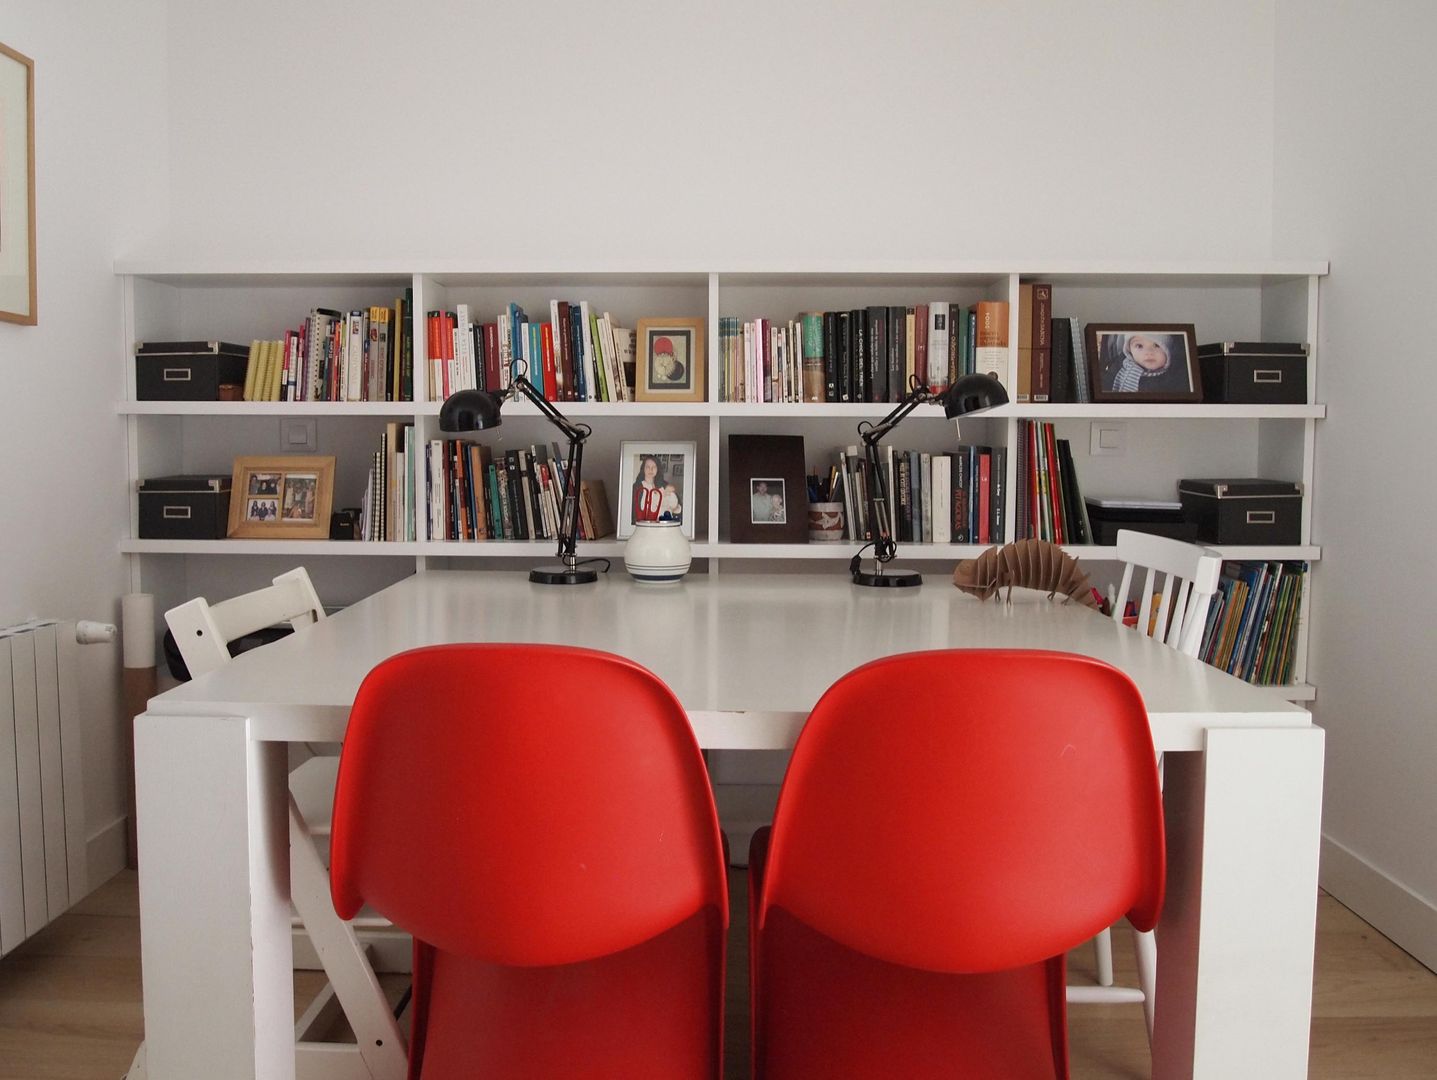 Estudio blanco y rojo Reformmia Estudios y despachos de estilo moderno sillas Panton rojas,estudio minimalista,estantería a medida